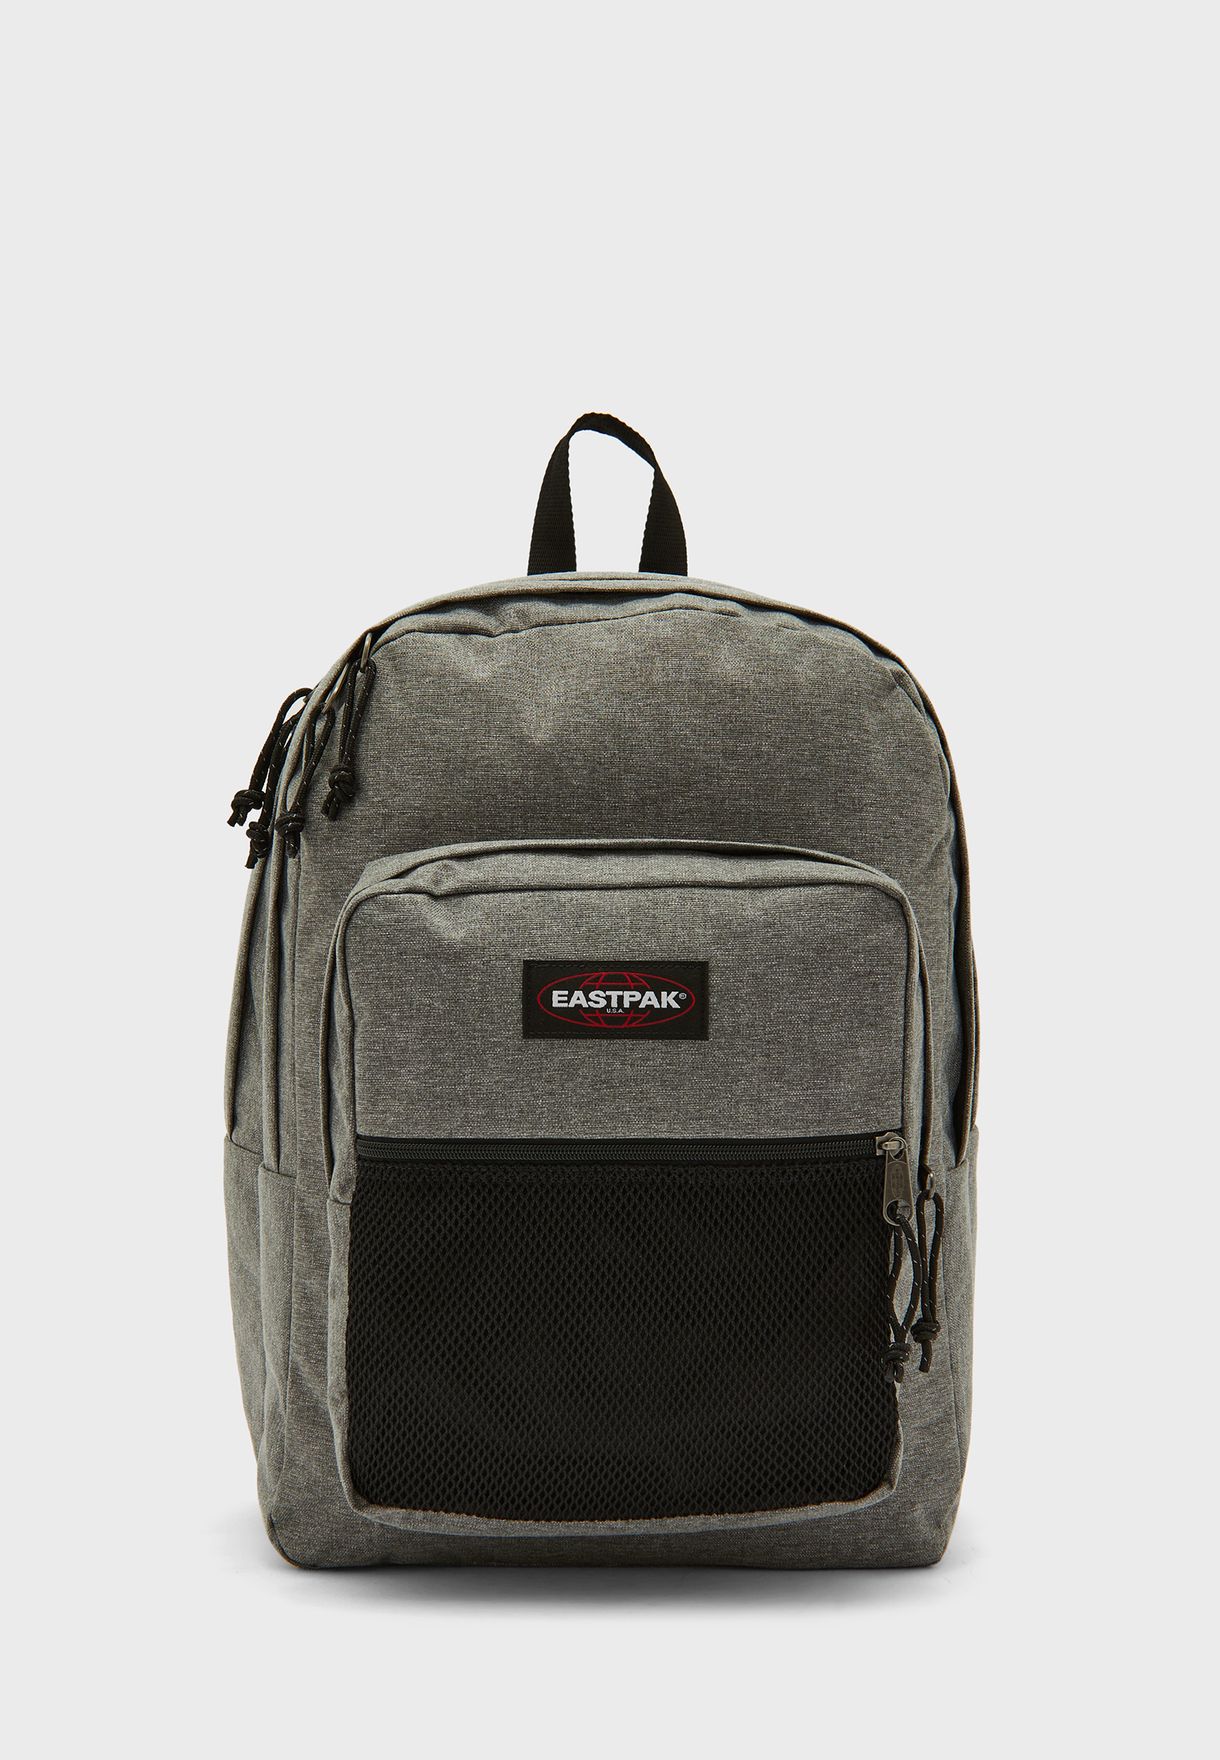 Pinnacle Backpack